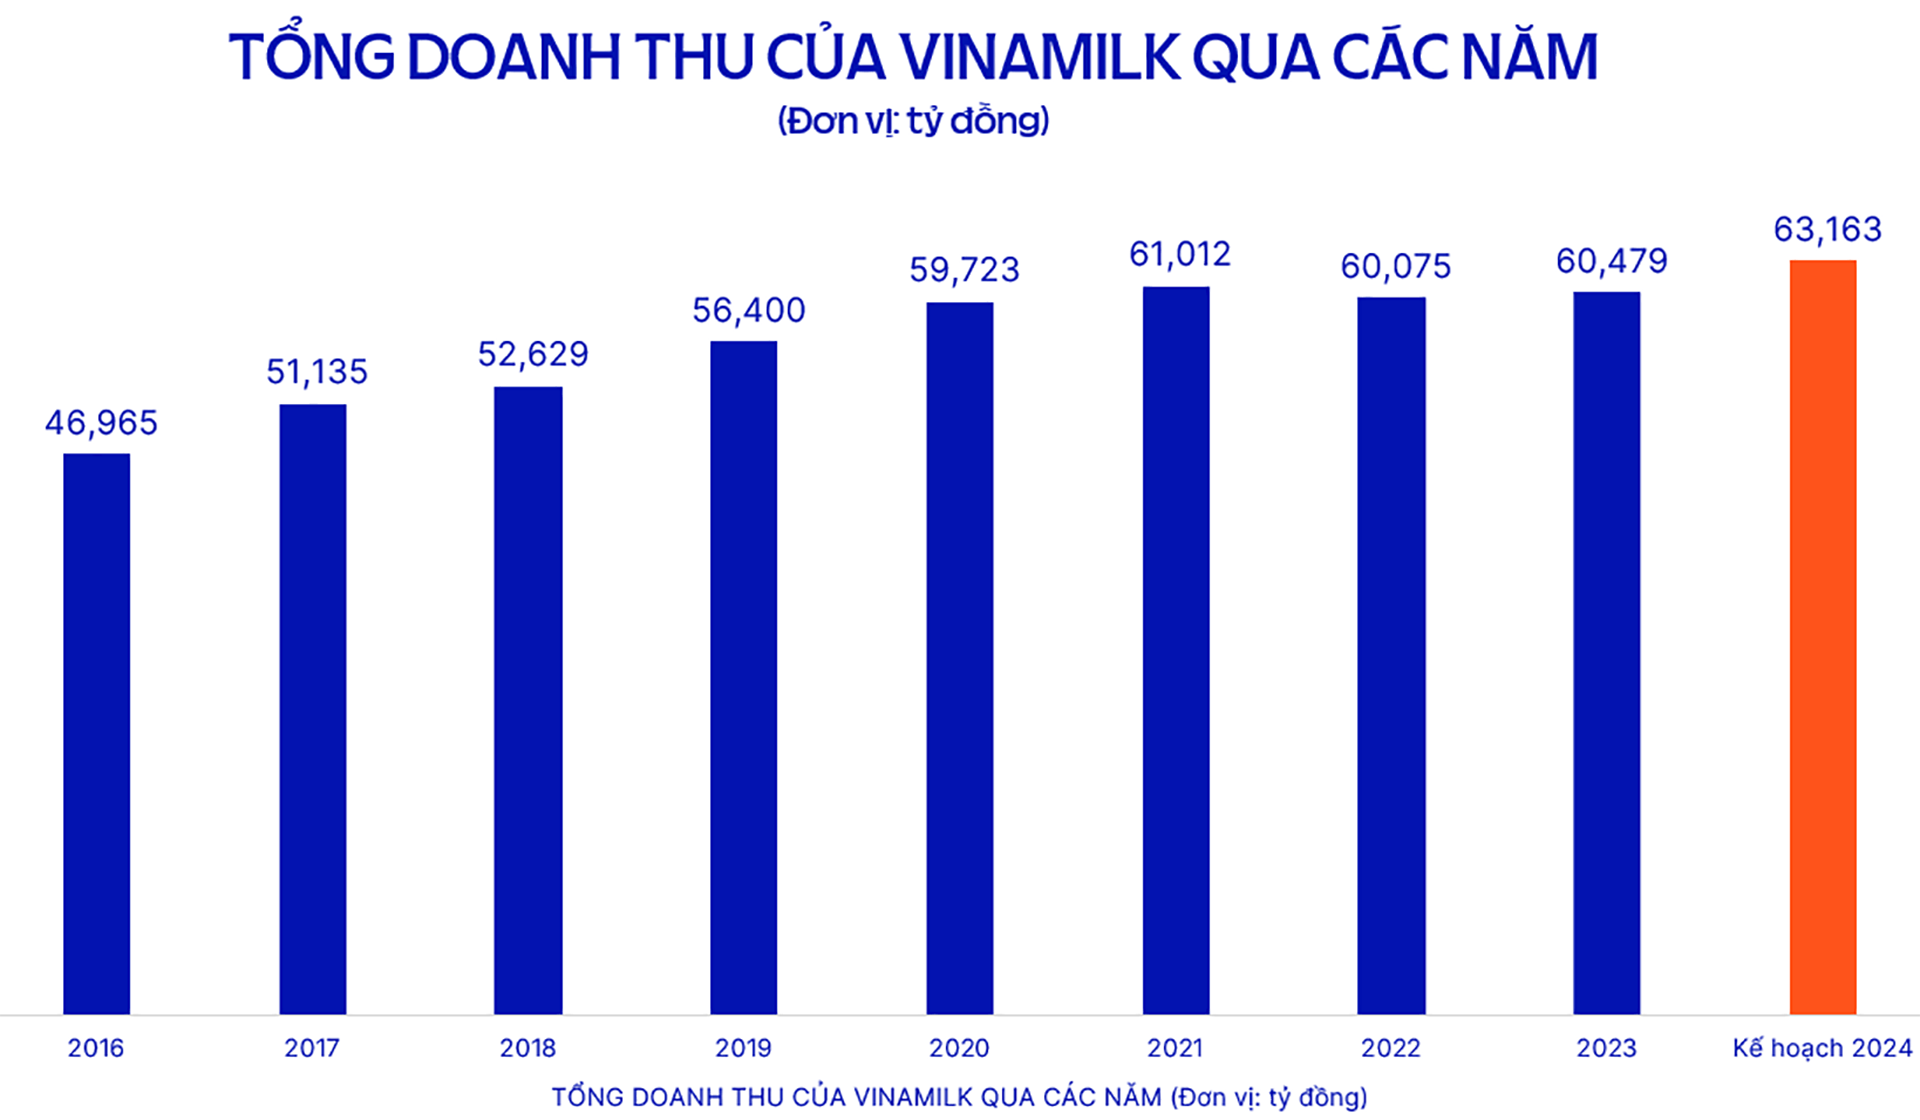 Năm 2024, Vinamilk đặt mục tiêu doanh thu 63,163 tỉ đồng